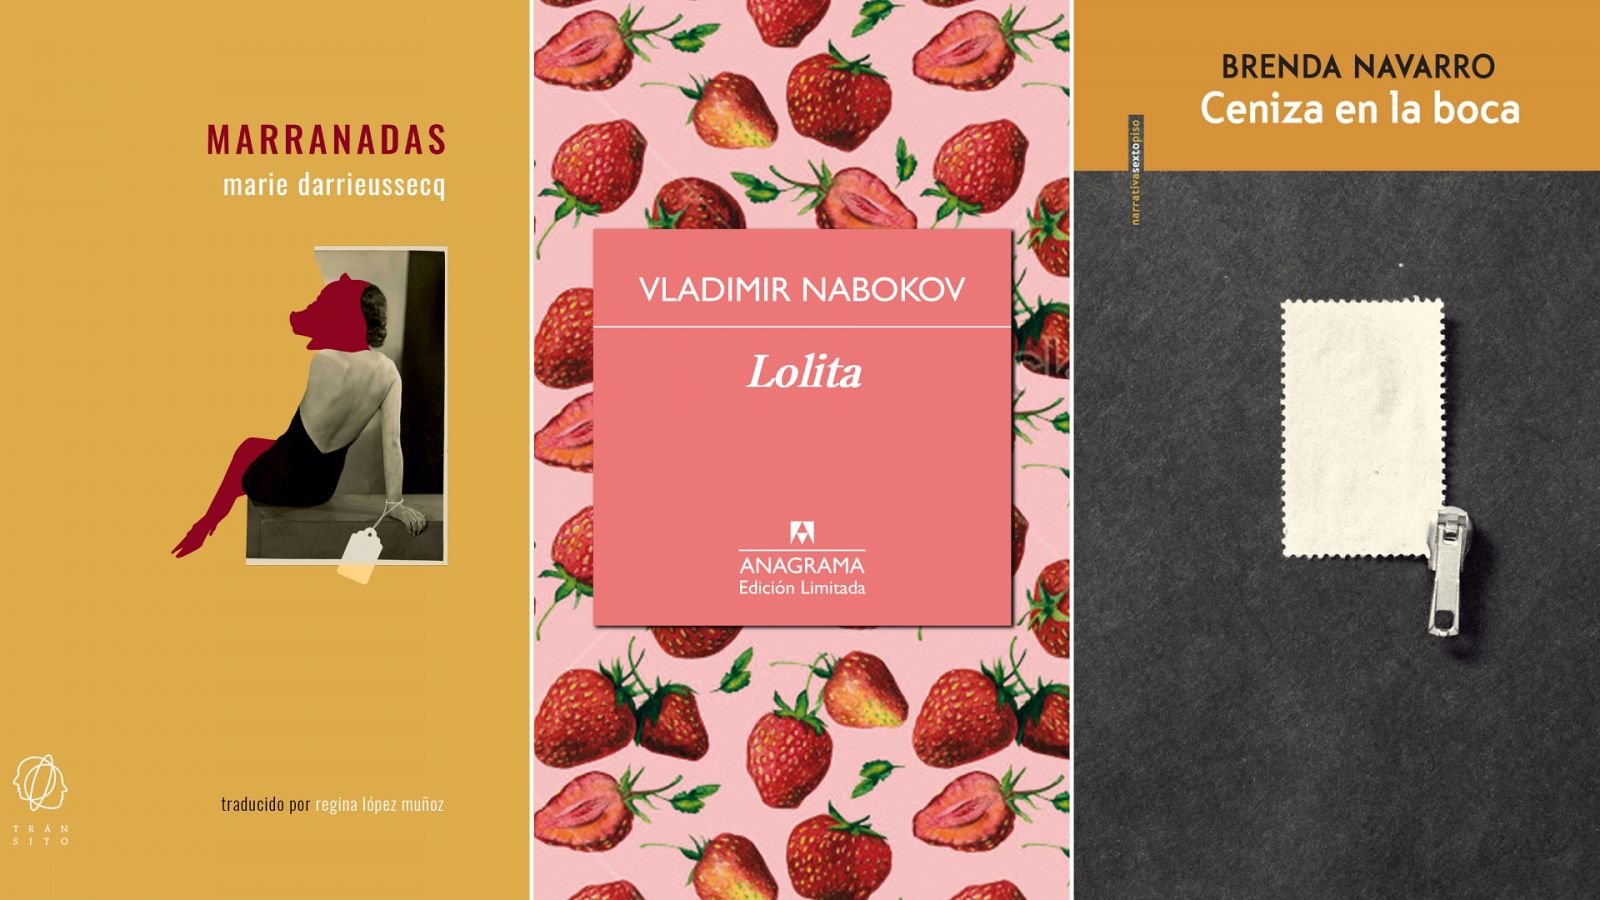 'Marranadas', de Marie Darrieussecq (Tránsito), 'Lolita', de Vladimir Nabokov (Anagrama) y 'Ceniza en la boca', de Brenda Navarro (Sexto Piso)